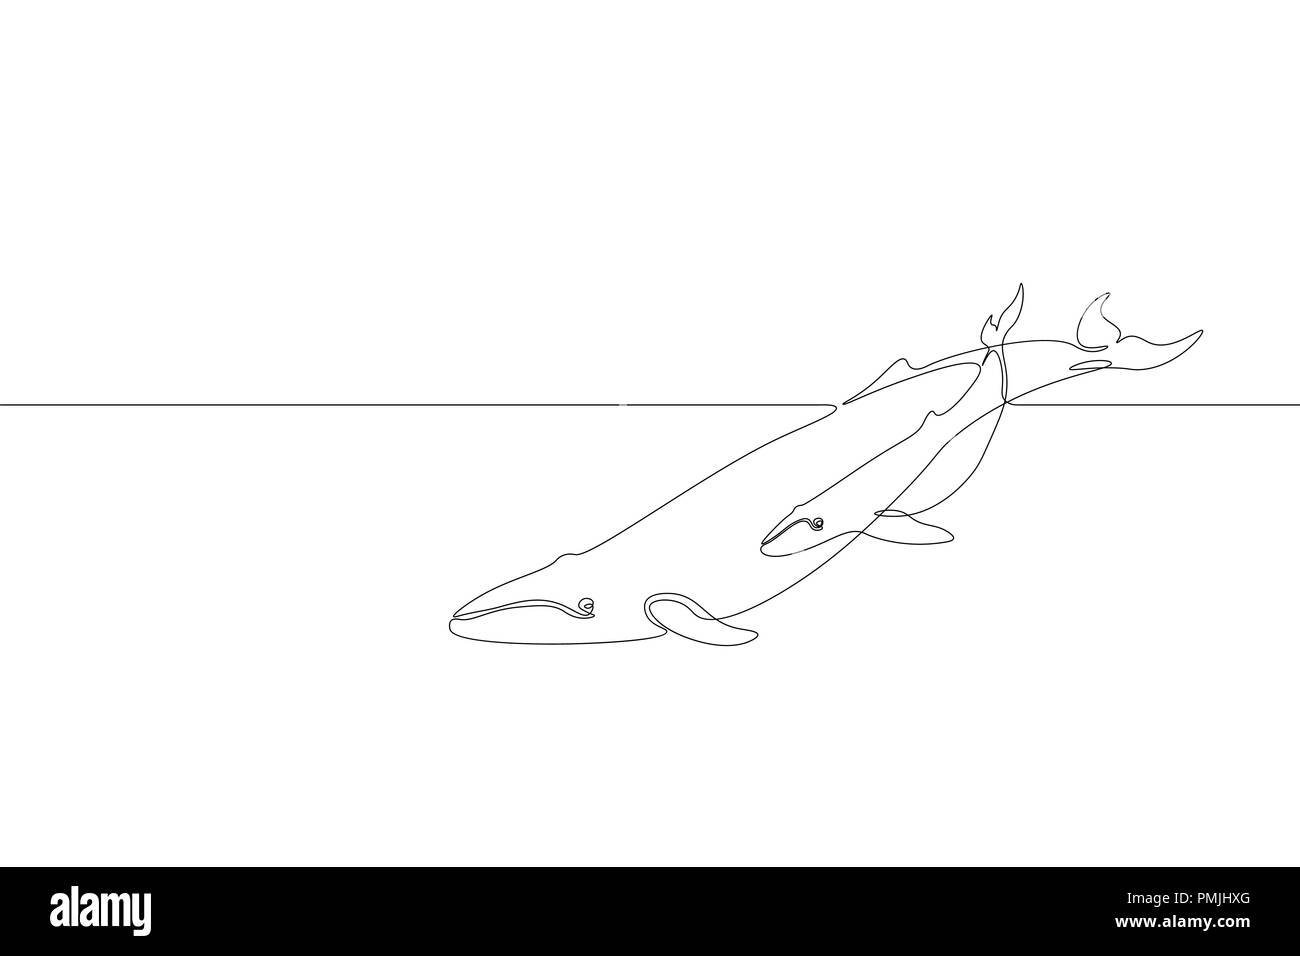 Eine durchgehende Linie kunst Marine whale Eltern baby Silhouette. Natur Meer Ökologie Life Umwelt Konzept. Große Geschichte sea wave Mutter Tier Entwurf einer Skizze Maßbild Vector Illustration Stock Vektor